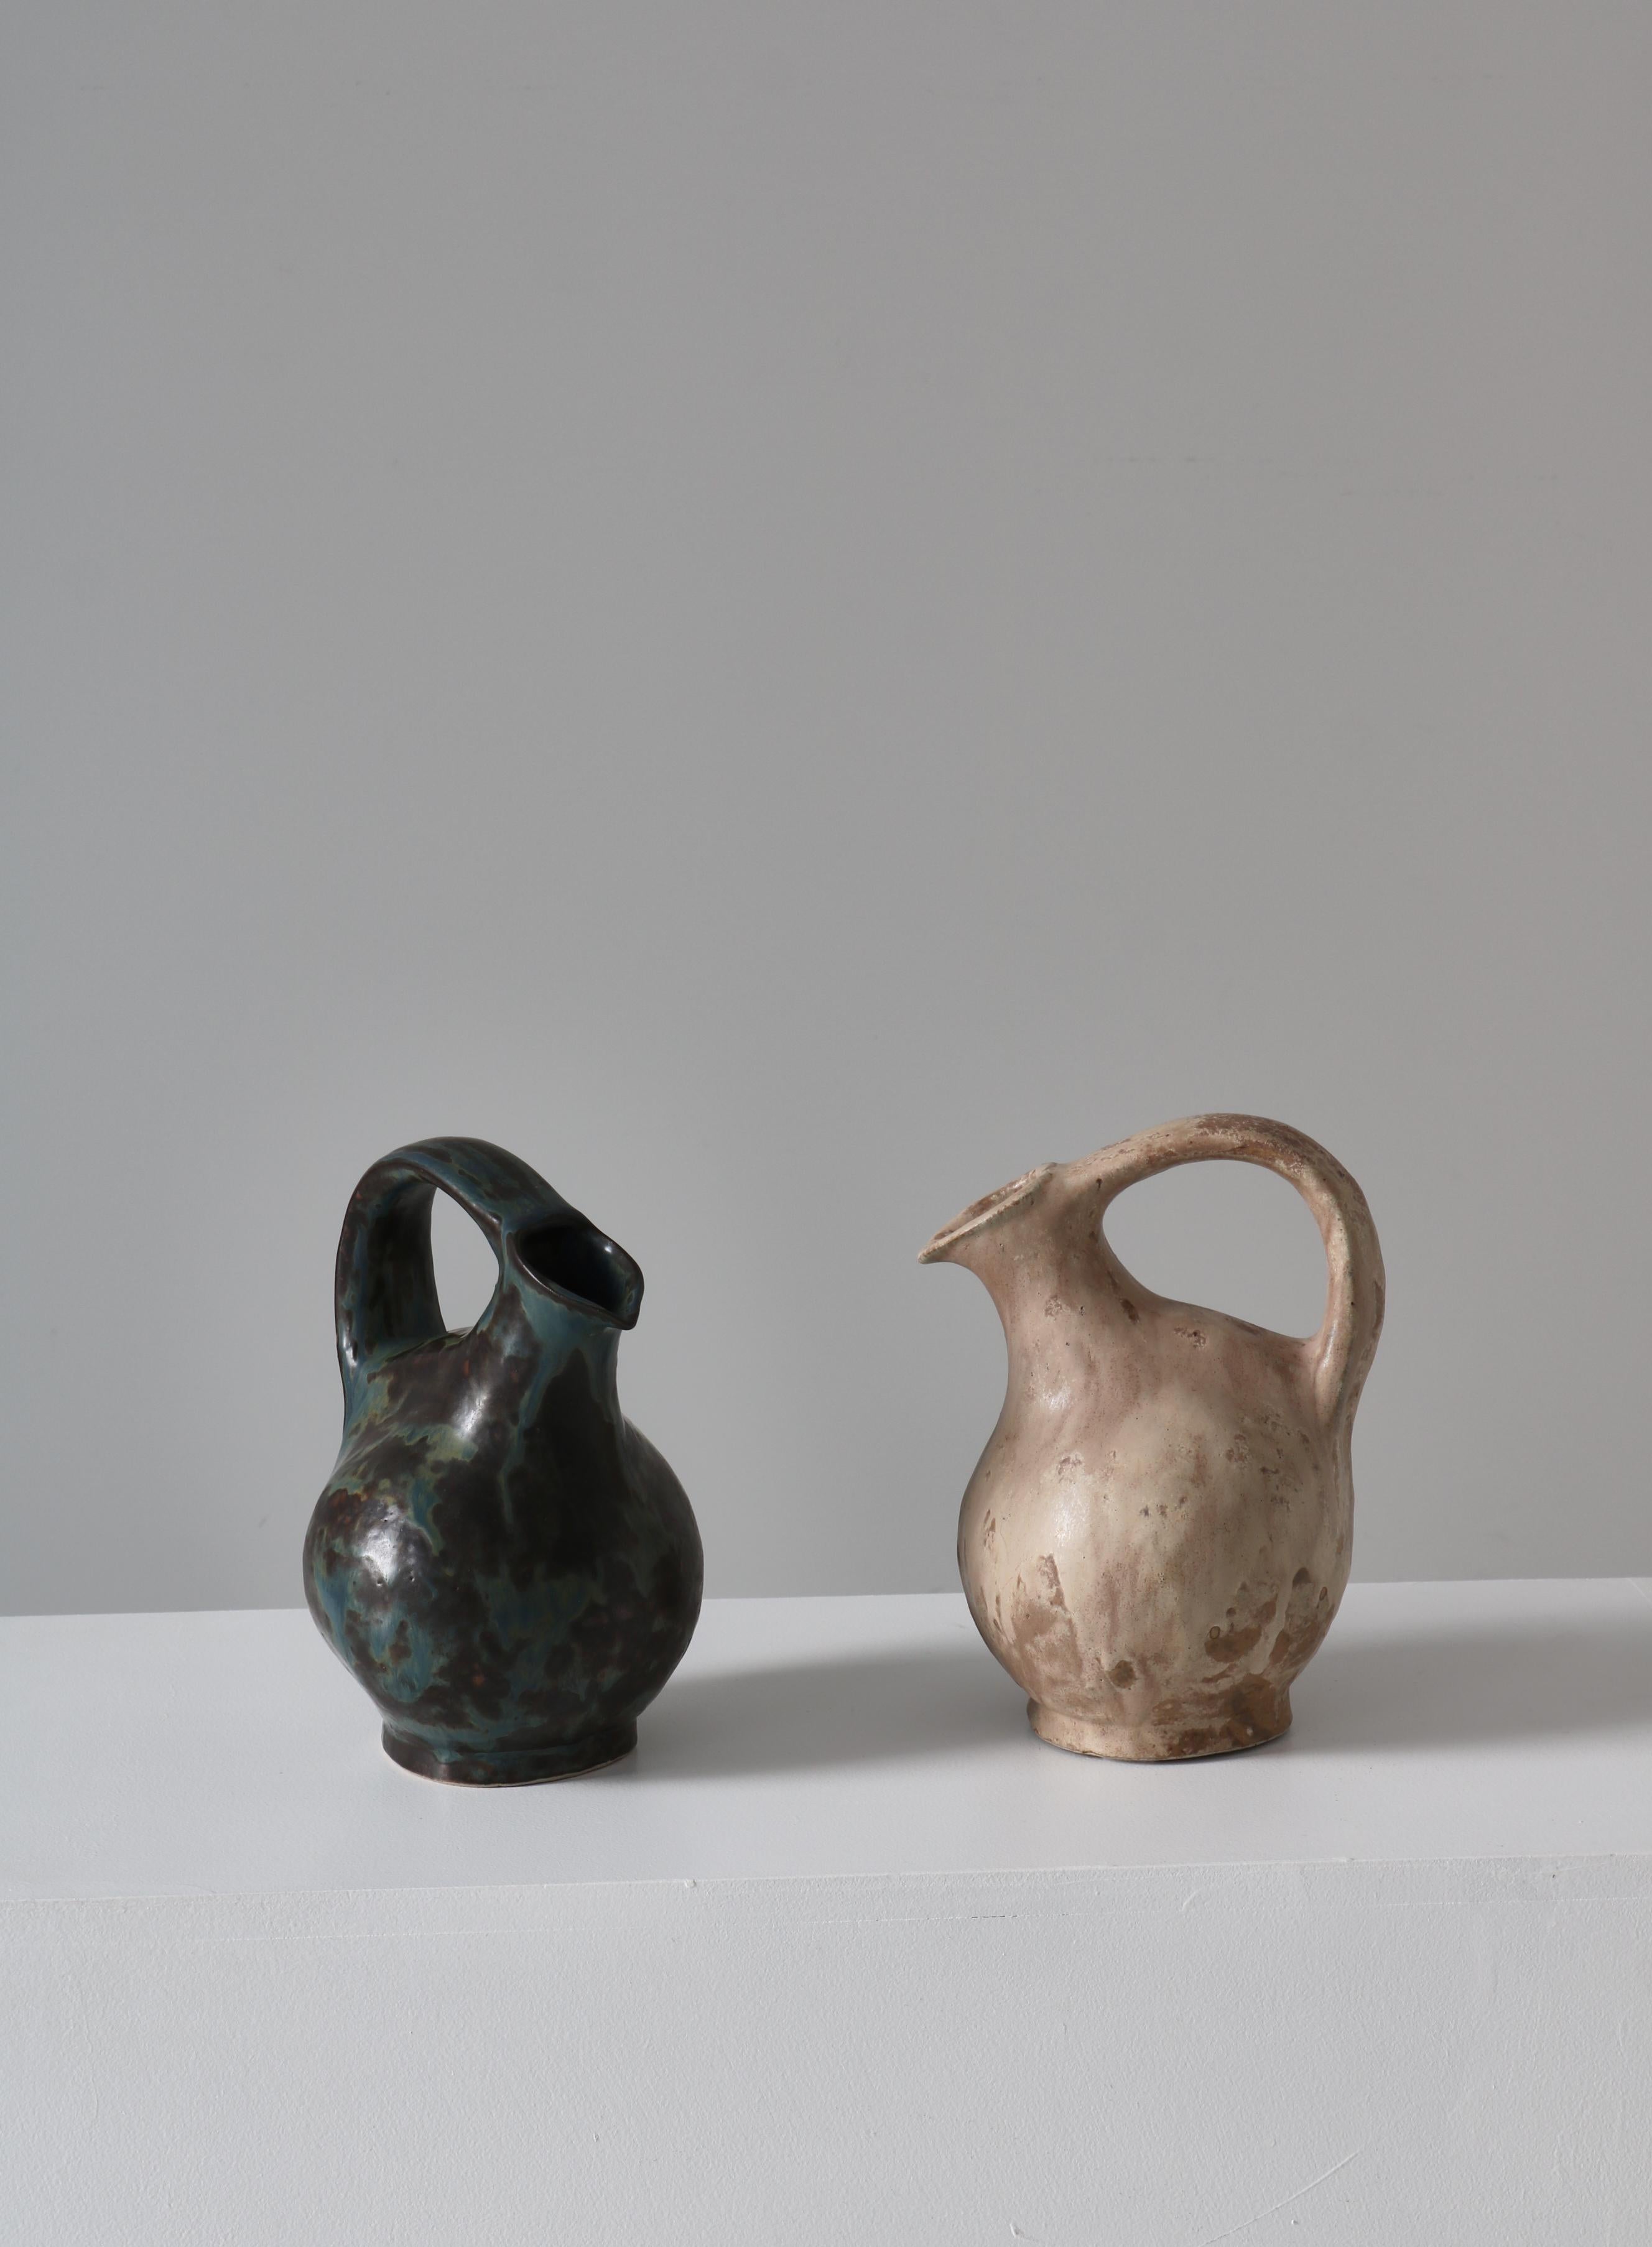 Erstaunliche und einzigartige frühe Steingutkrüge des dänischen Keramikkünstlers Bode Willumsen. Beide wurden in den 1920-30er Jahren in seinem eigenen Studio hergestellt. Beide Stücke wurden vom Künstler selbst von Hand aus Steingut mit einer